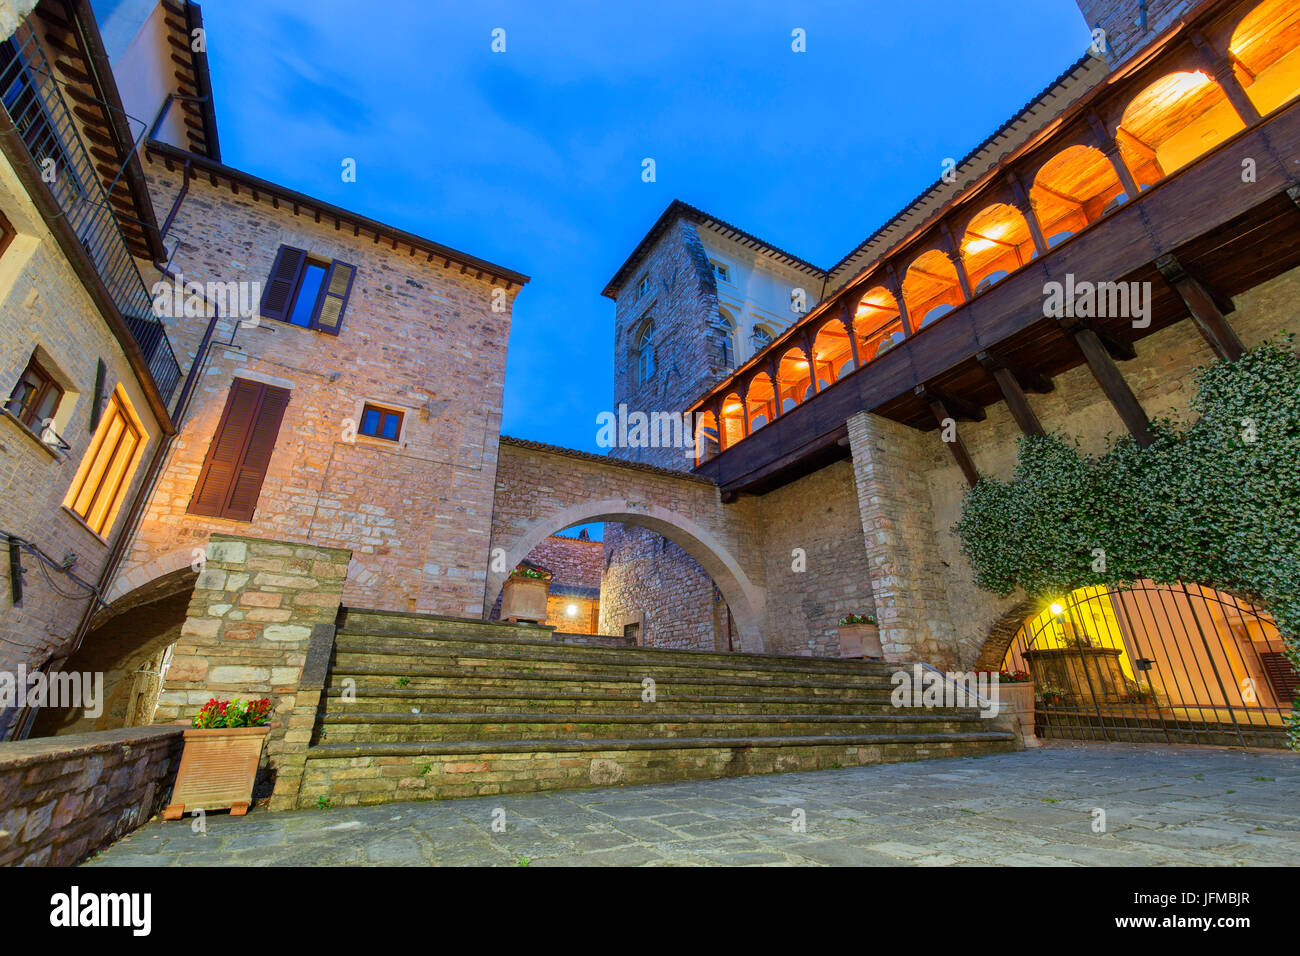 Europe, Italy, Umbria, Perugia district, Spello, Glimpse of the city Stock Photo